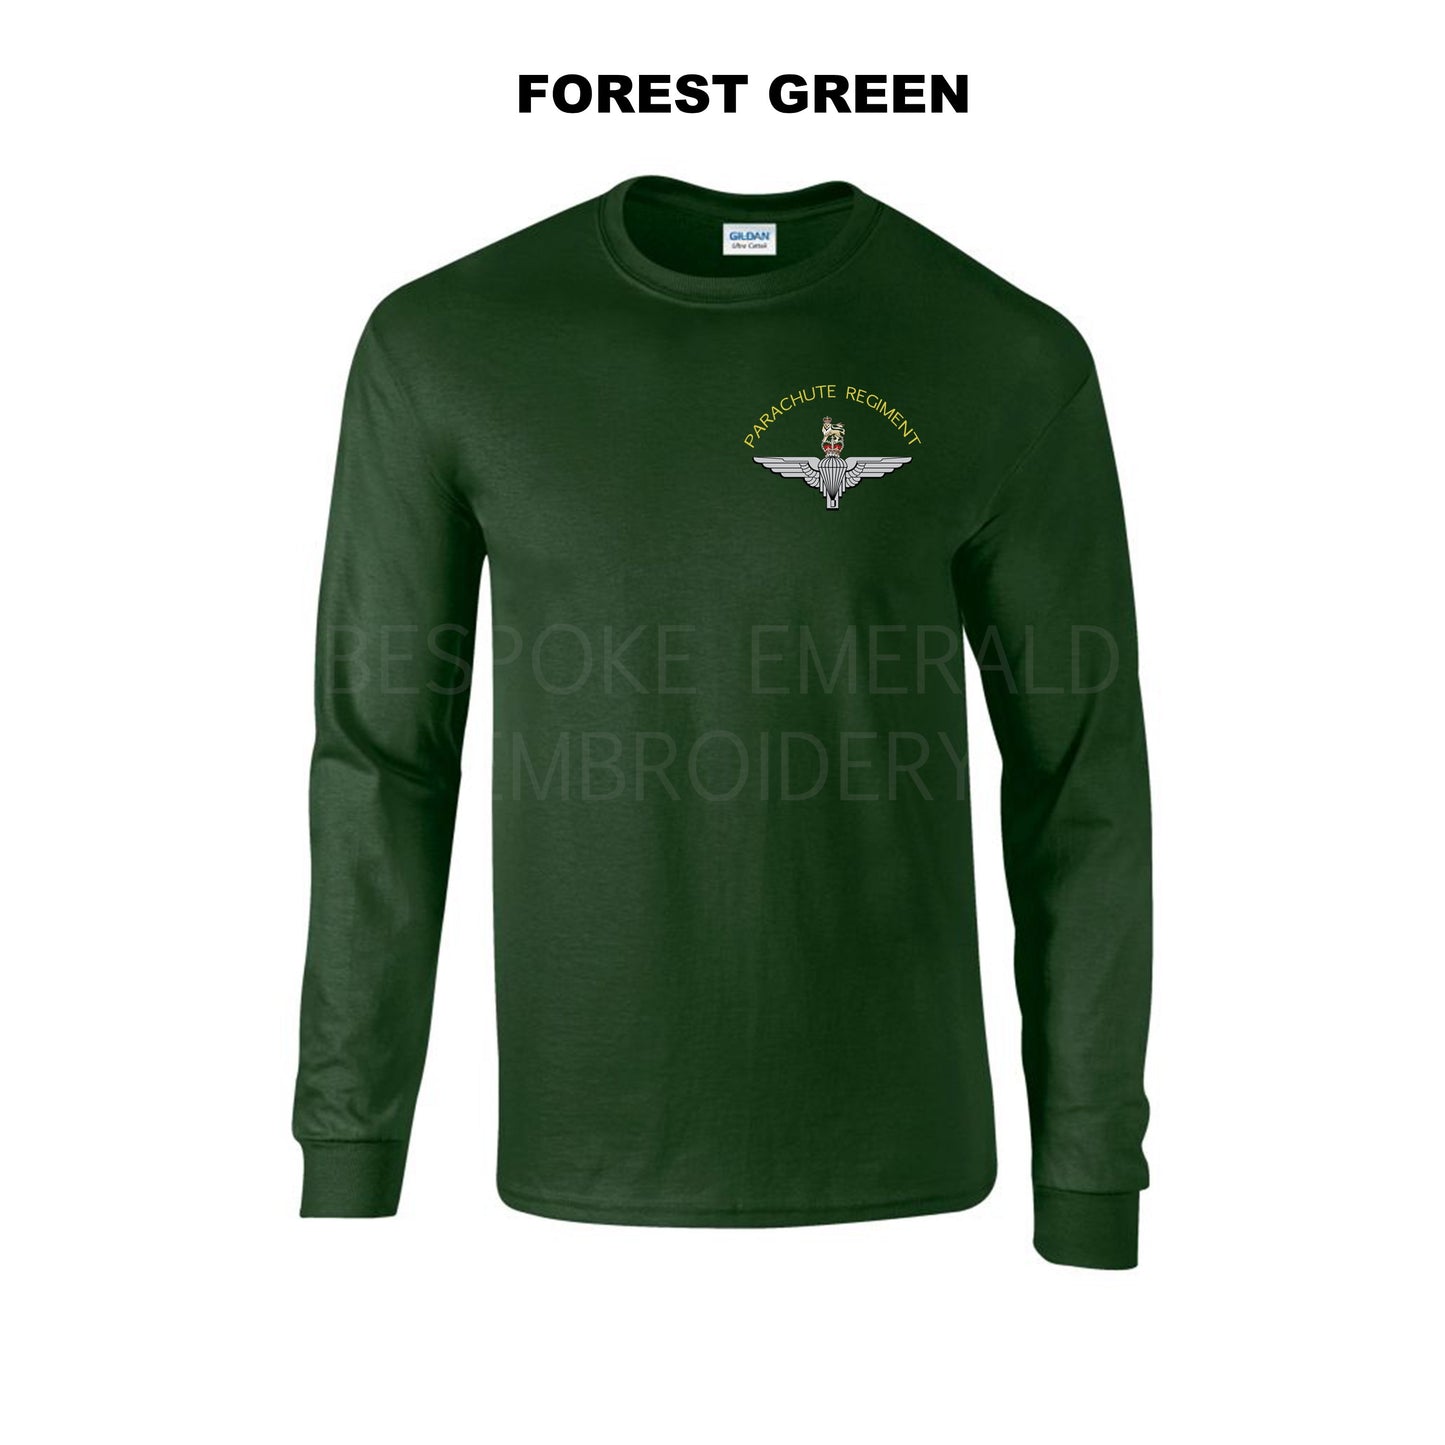 GD14 - Parachute regiment Long sleeve T-shirt - Bespoke Emerald Embroidery Ltd